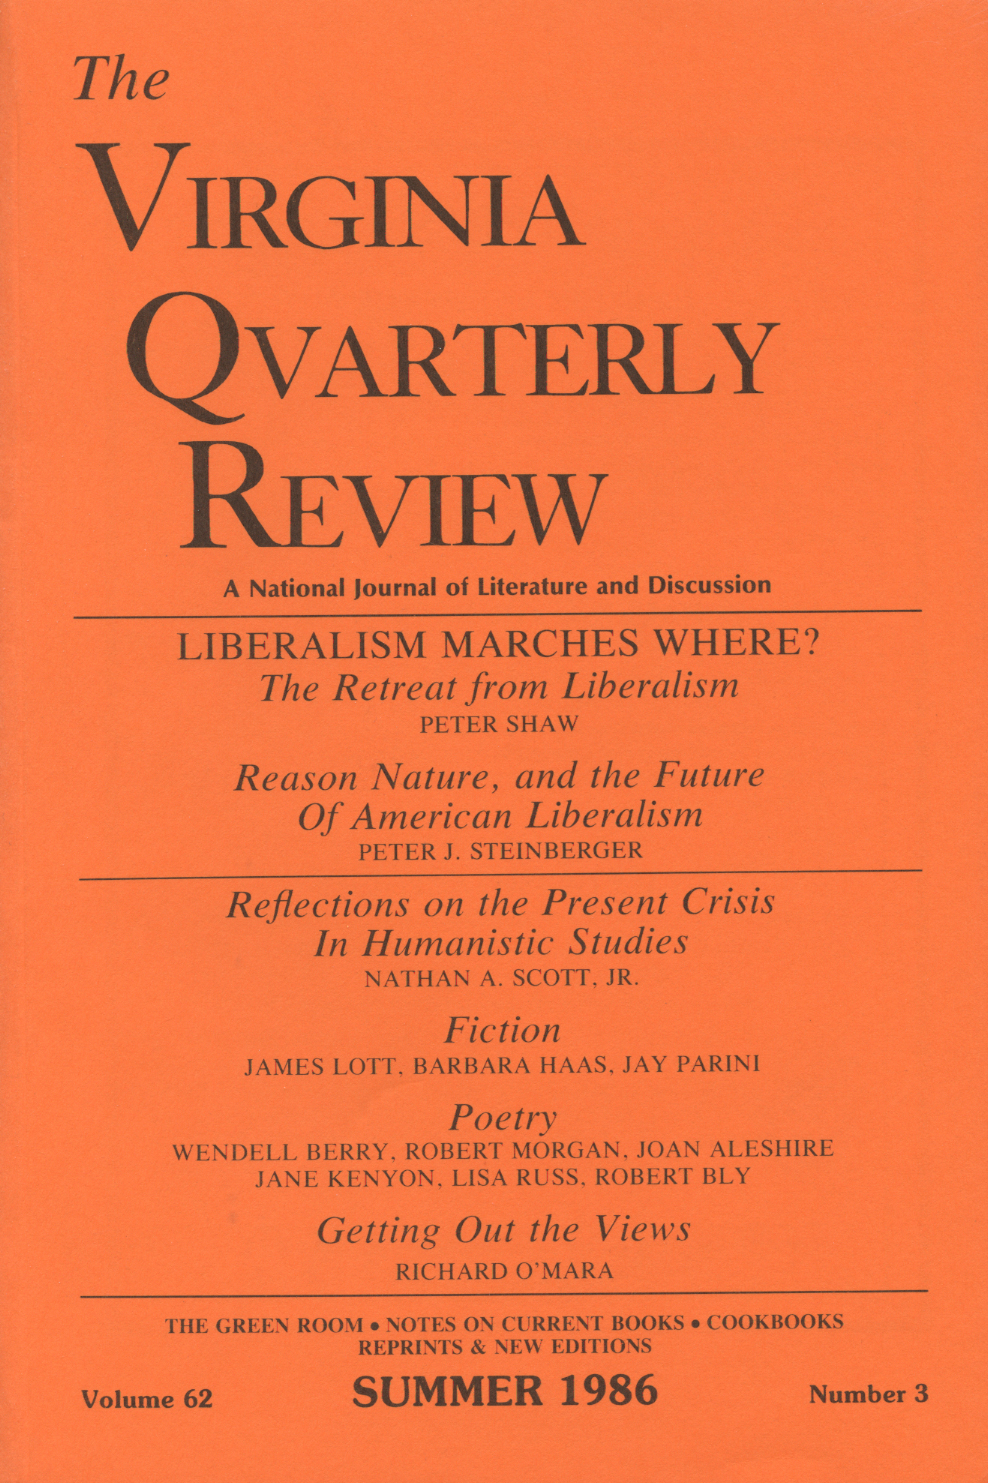 Virginia Quarterly Review, Summer 1986 cover